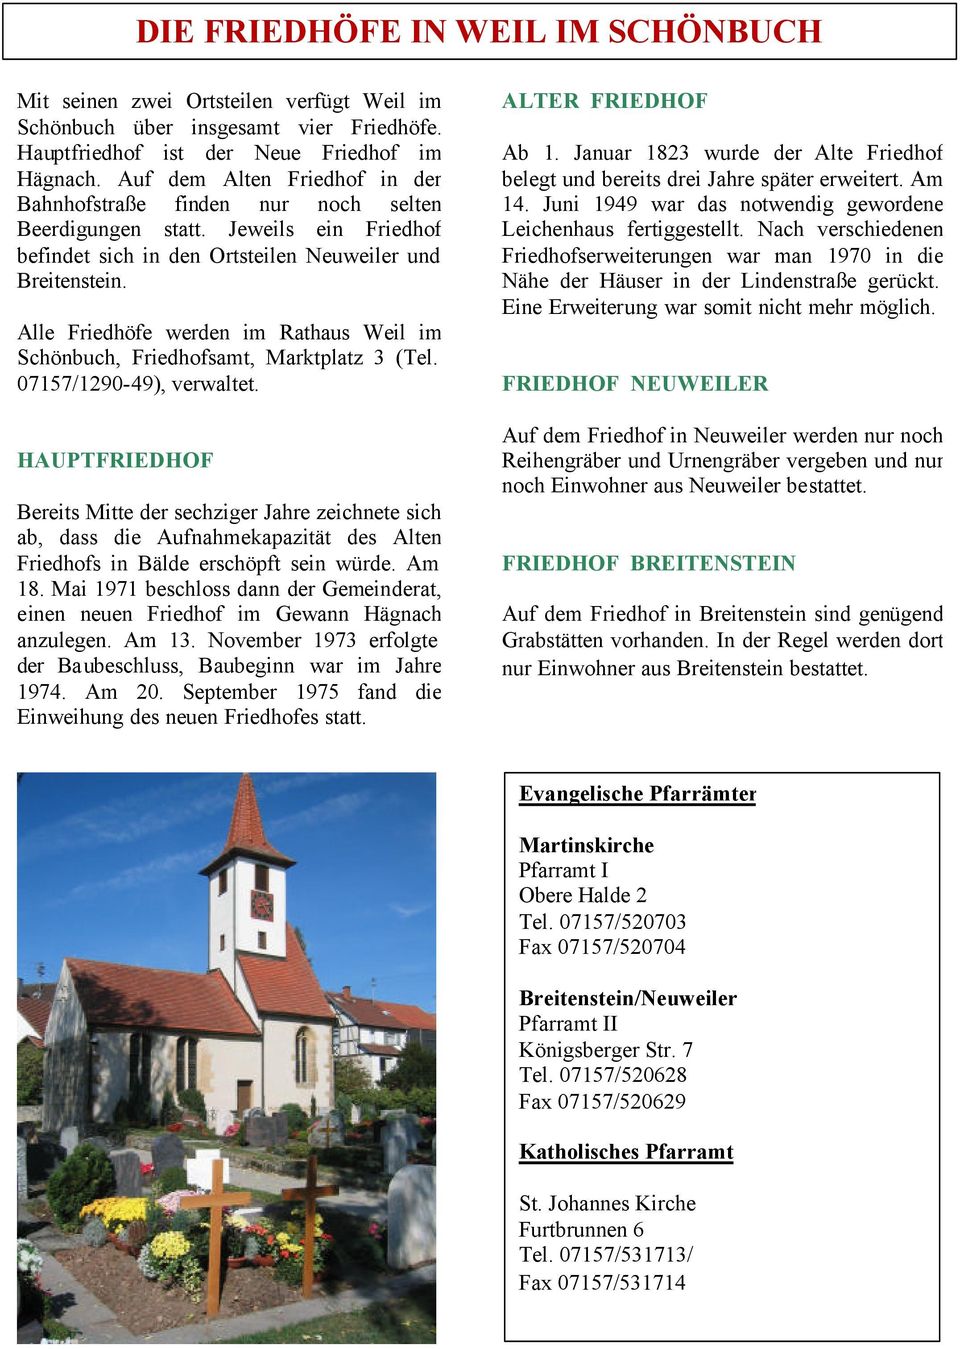 Alle Friedhöfe werden im Rathaus Weil im Schönbuch, Friedhofsamt, Marktplatz 3 (Tel. 07157/1290-49), verwaltet.